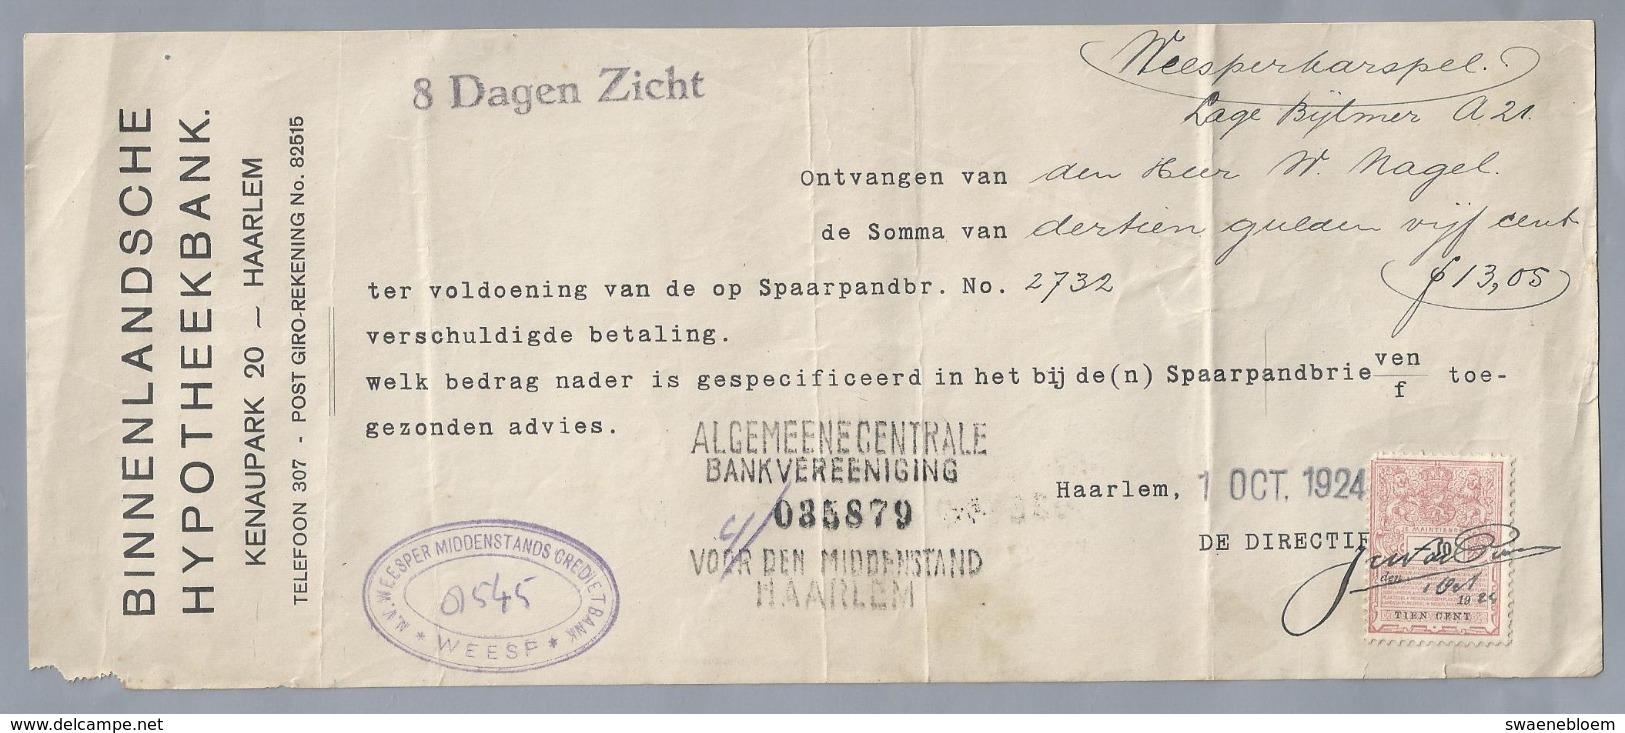 NL.- Betaal Bewijs Van De BINNENLANDSCHE HYPOTHEEKBANK. KENAUPARK 20 HAARLEM. 1 OCT 1924. - Netherlands